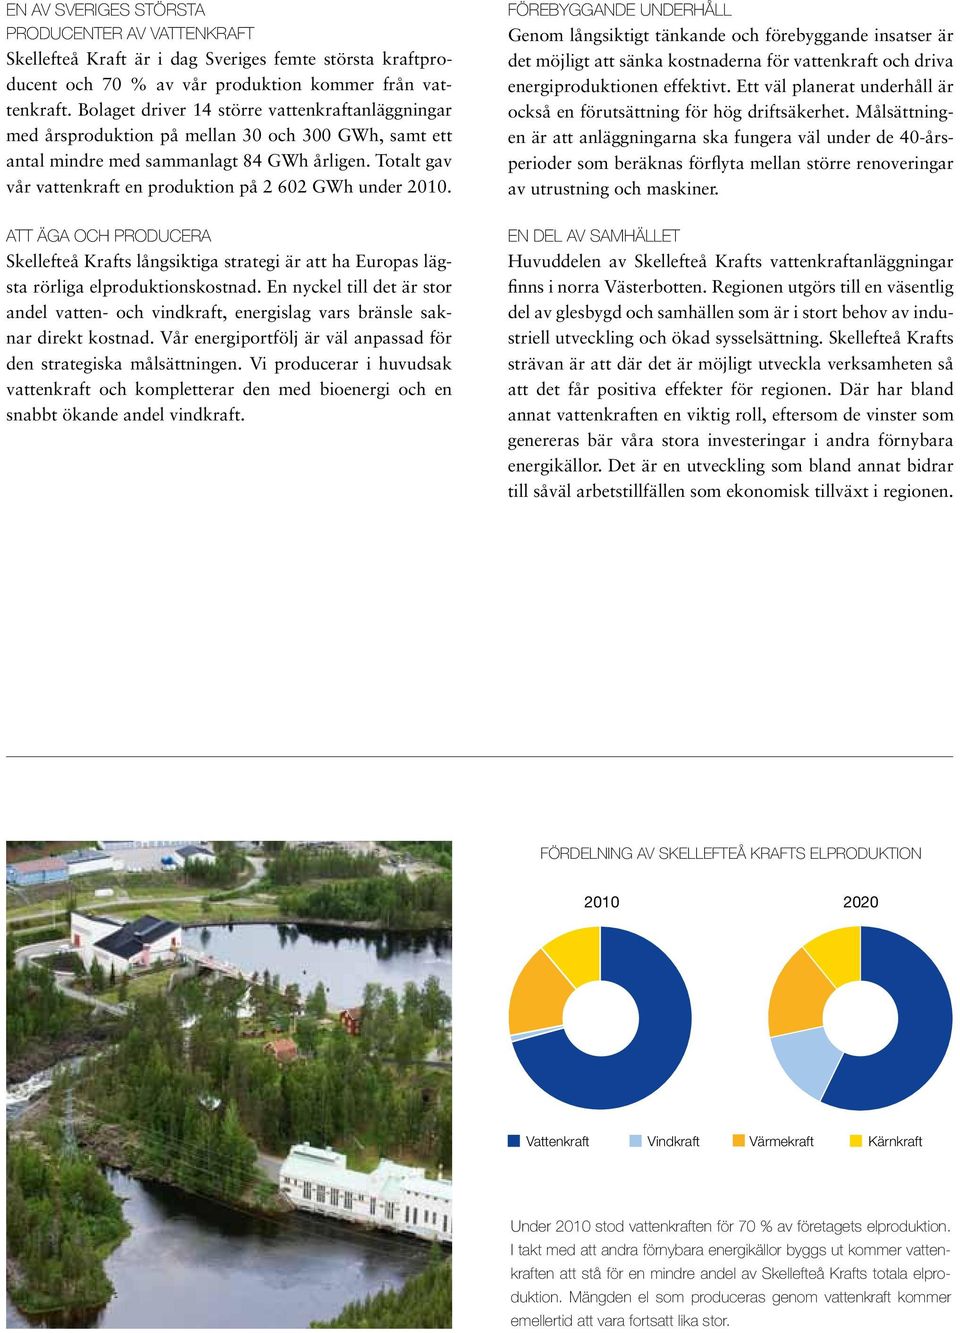 Totalt gav vår vattenkraft en produktion på 2 602 GWh under 2010. Att äga och producera Skellefteå Krafts långsiktiga strategi är att ha Europas lägsta rörliga elproduktionskostnad.